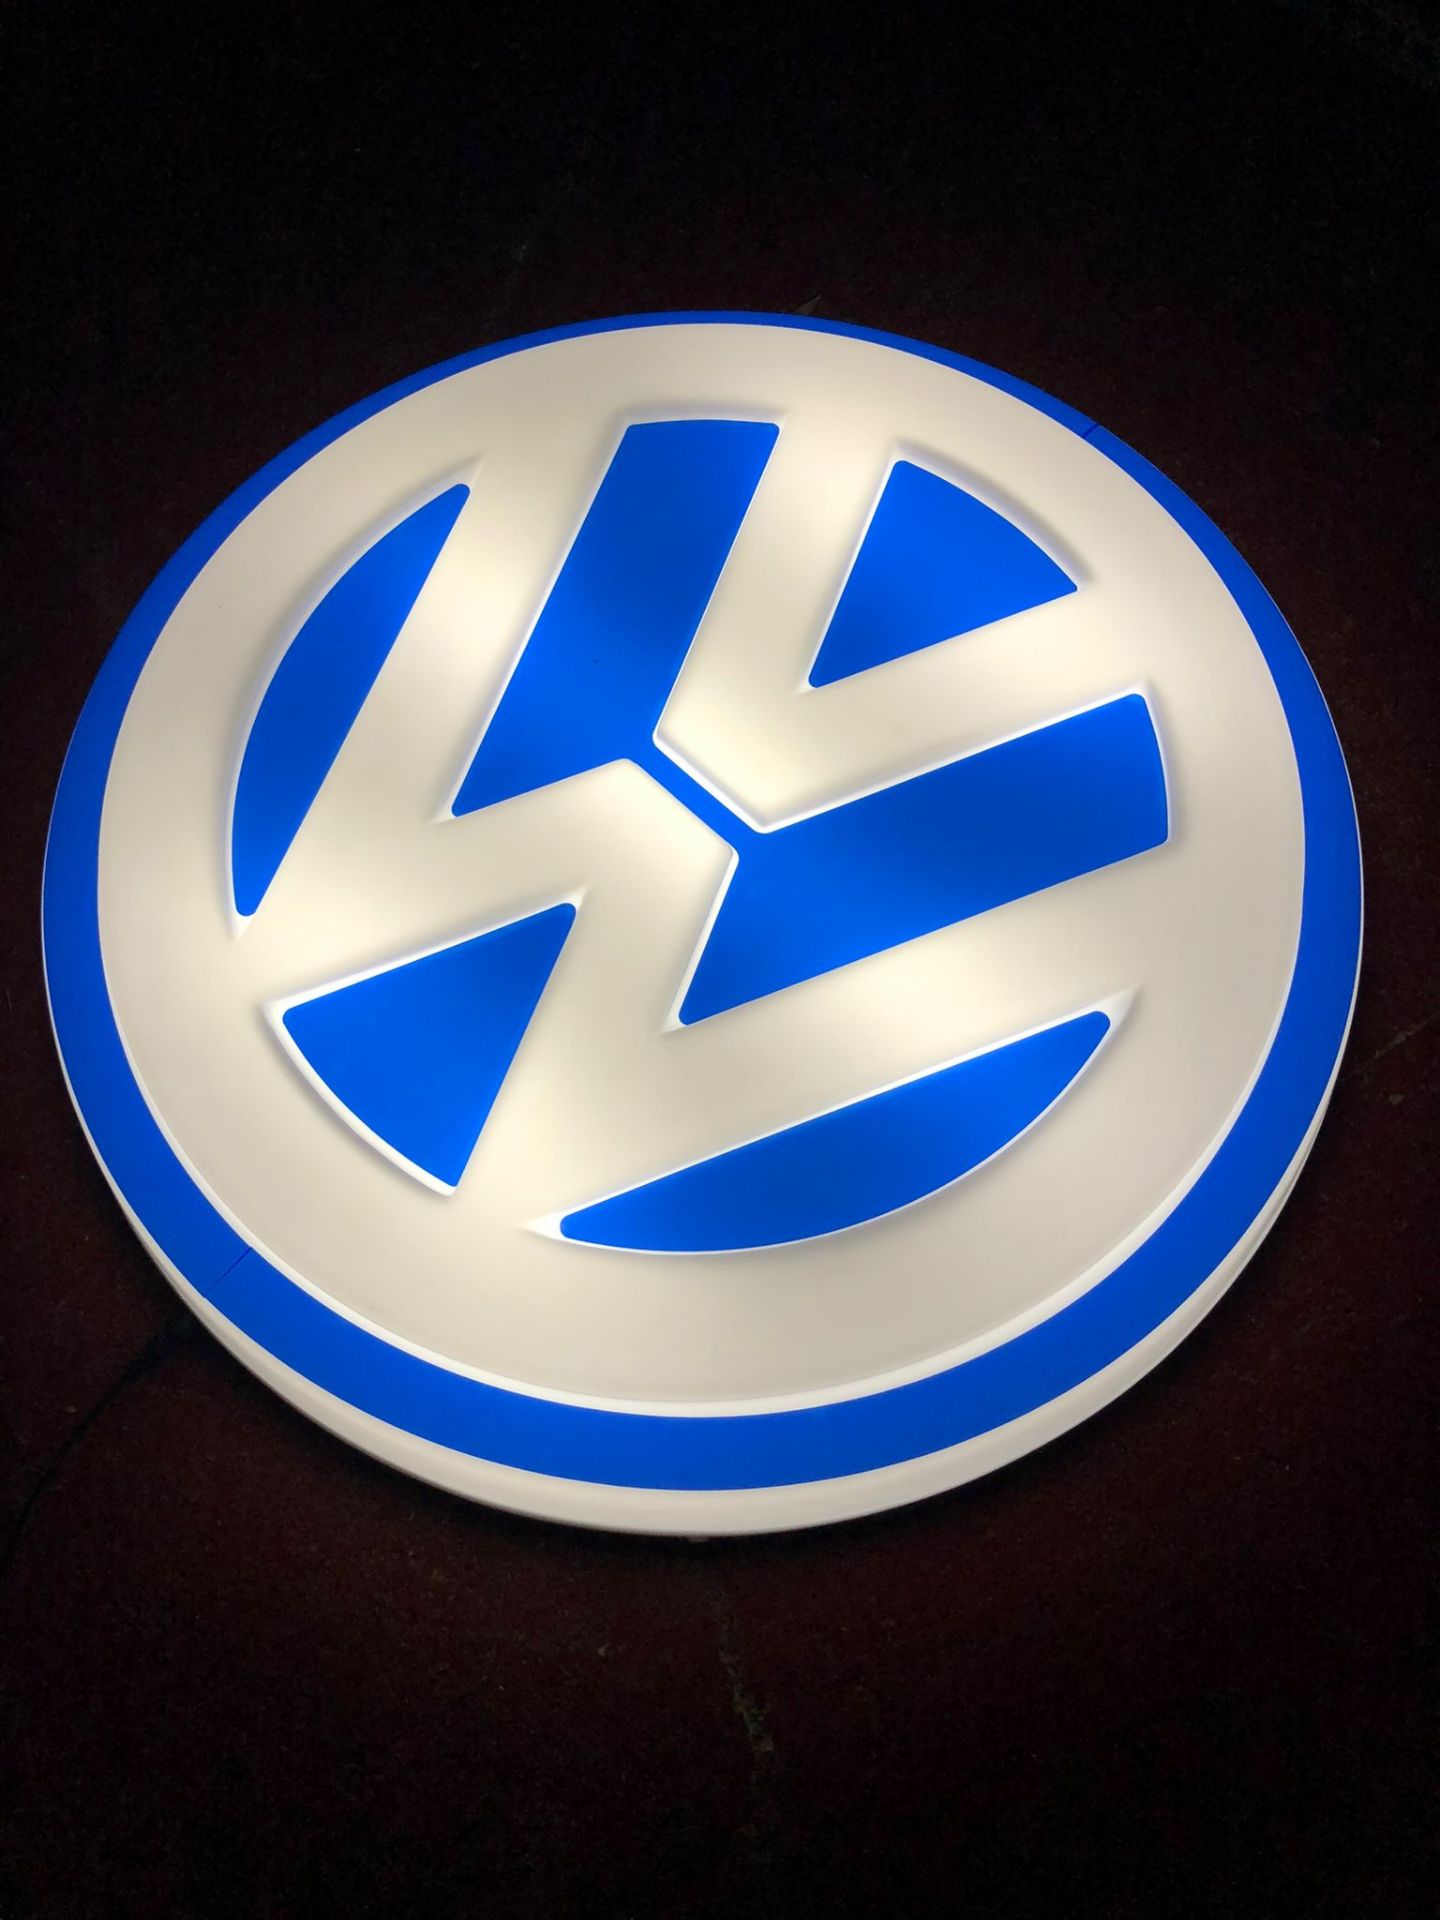 VW illuminated sign - Image 3 of 3